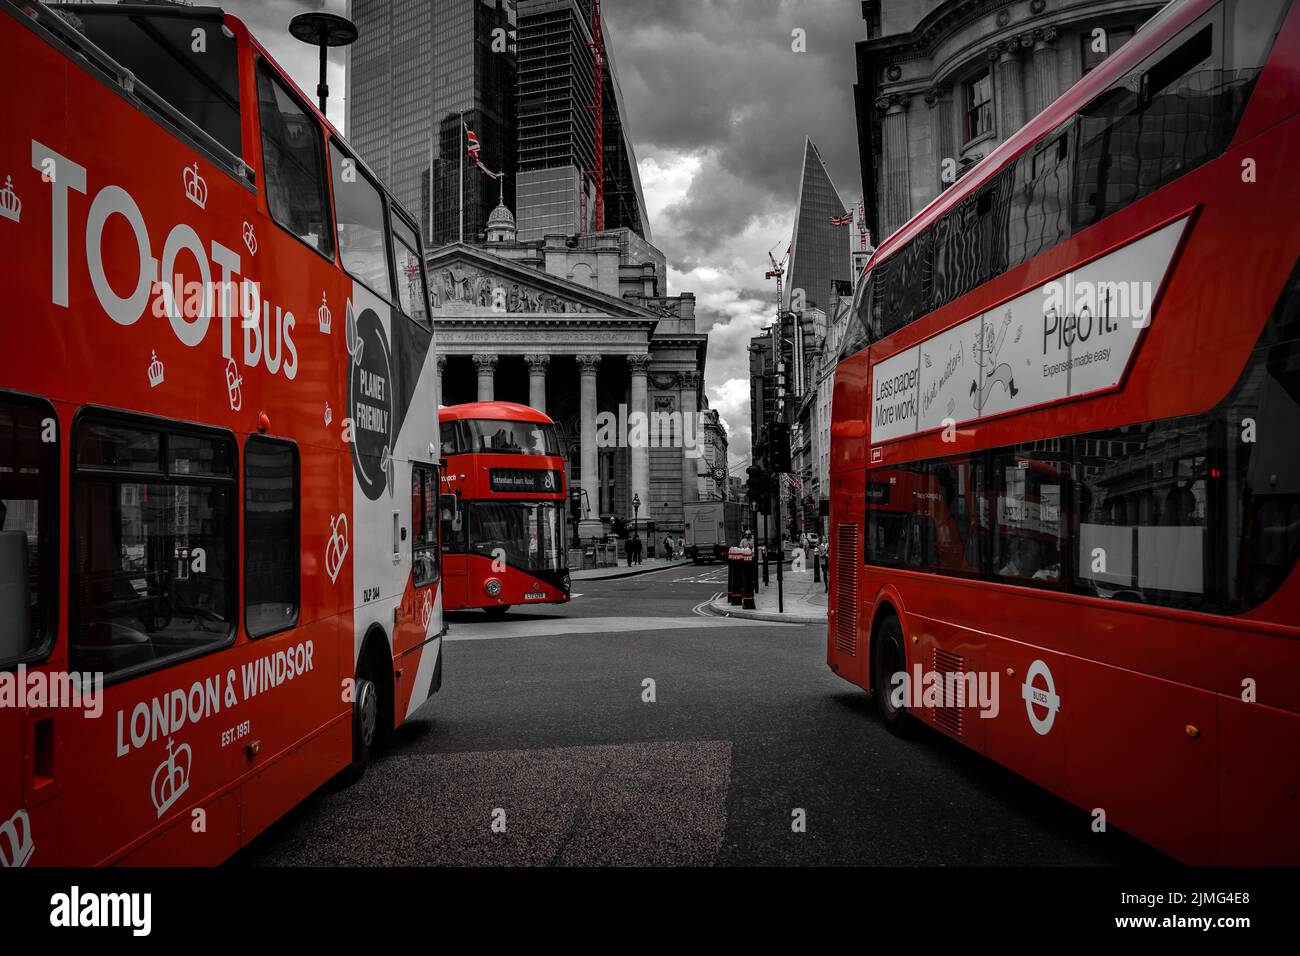 Trois bus rouges à impériale se rejoignent au croisement de la gare de la banque, à Londres; couleur rouge sélective du papier peint à impériale de Londres Banque D'Images